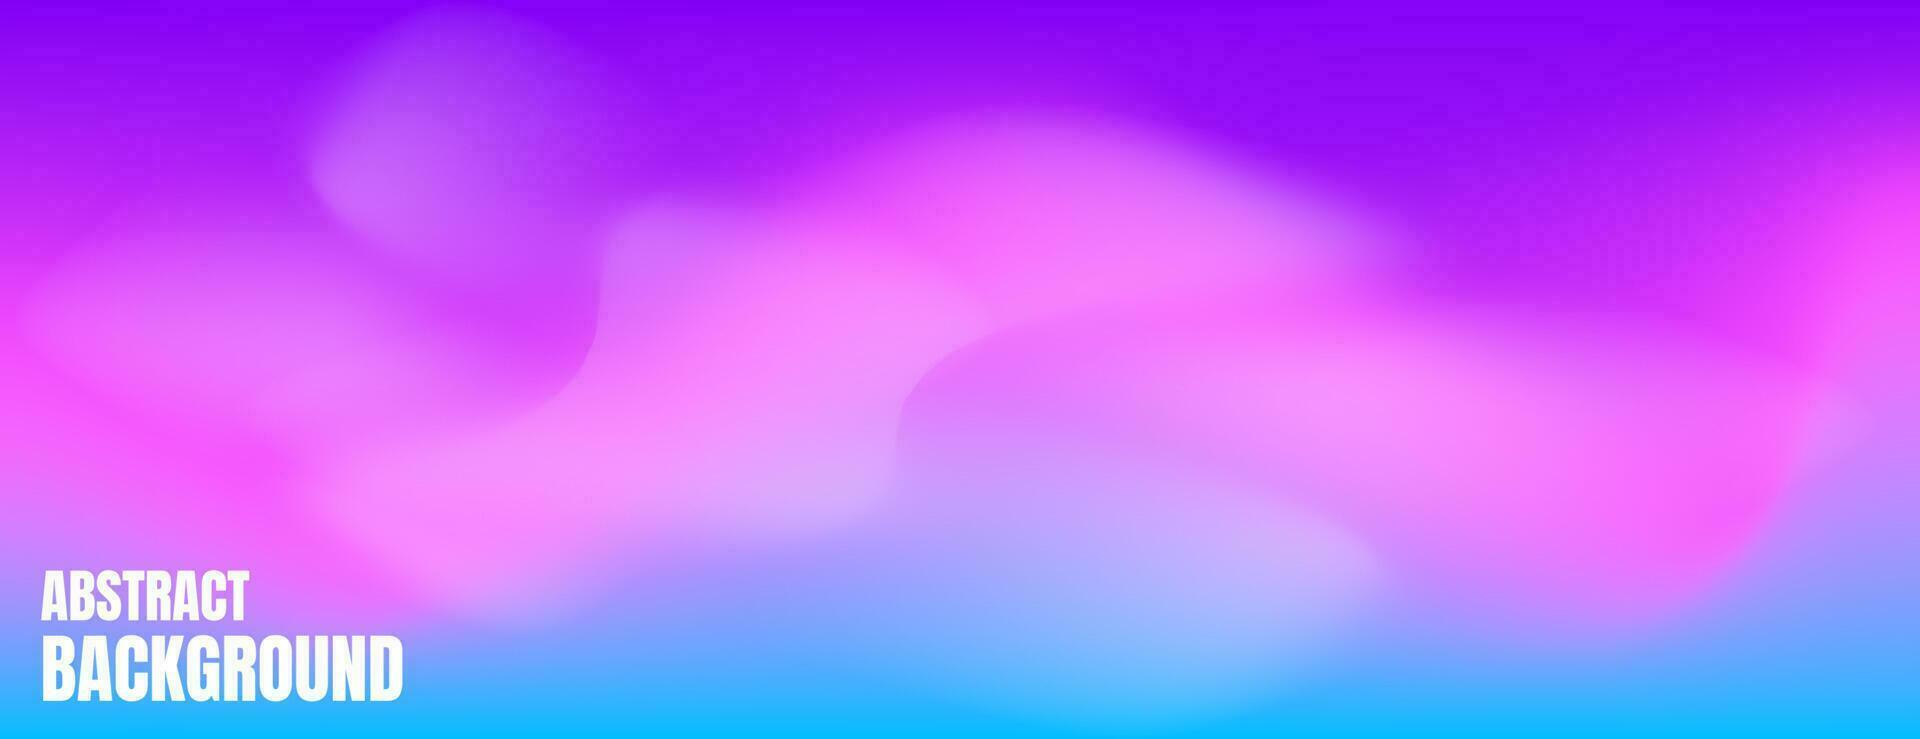 Rosa, Blau und Lila unscharf abstrakter Hintergrund mit Nebel vektor